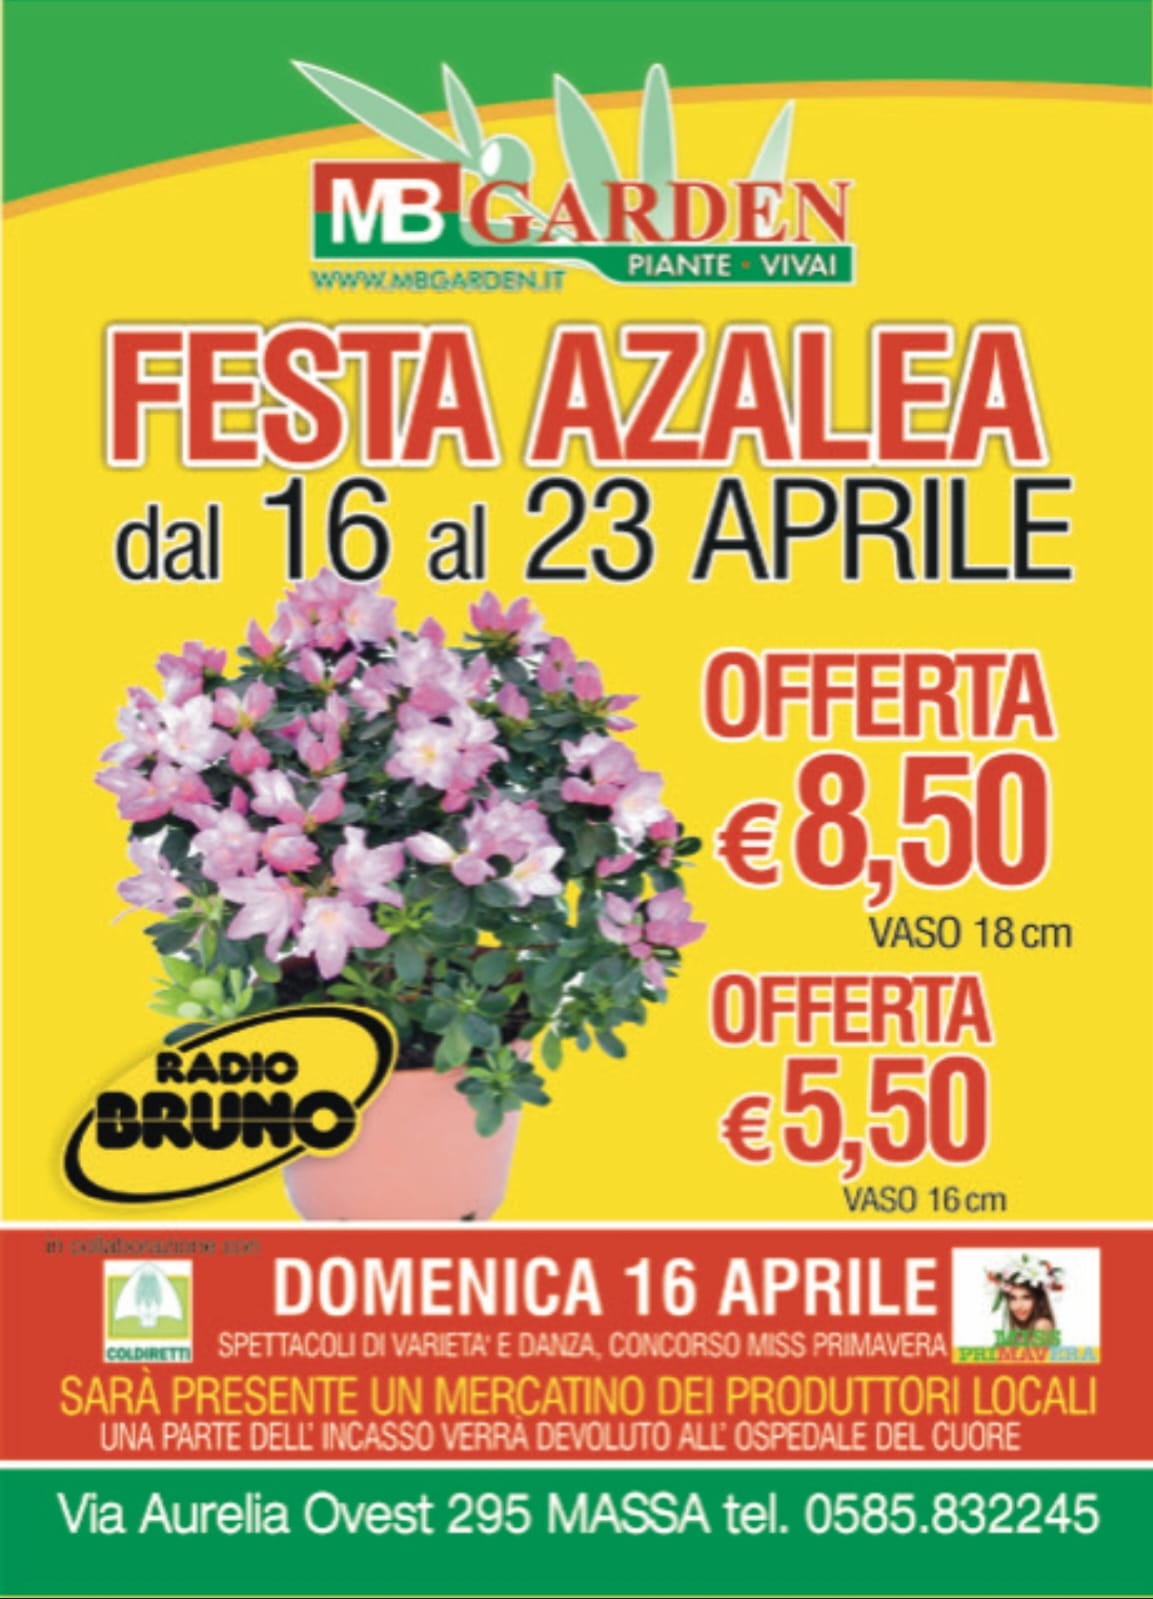 Torna la Festa dell'Azalea, la più grande d'Italia, presso la M.B. Garden di Massa. Radio Bruno media partner.